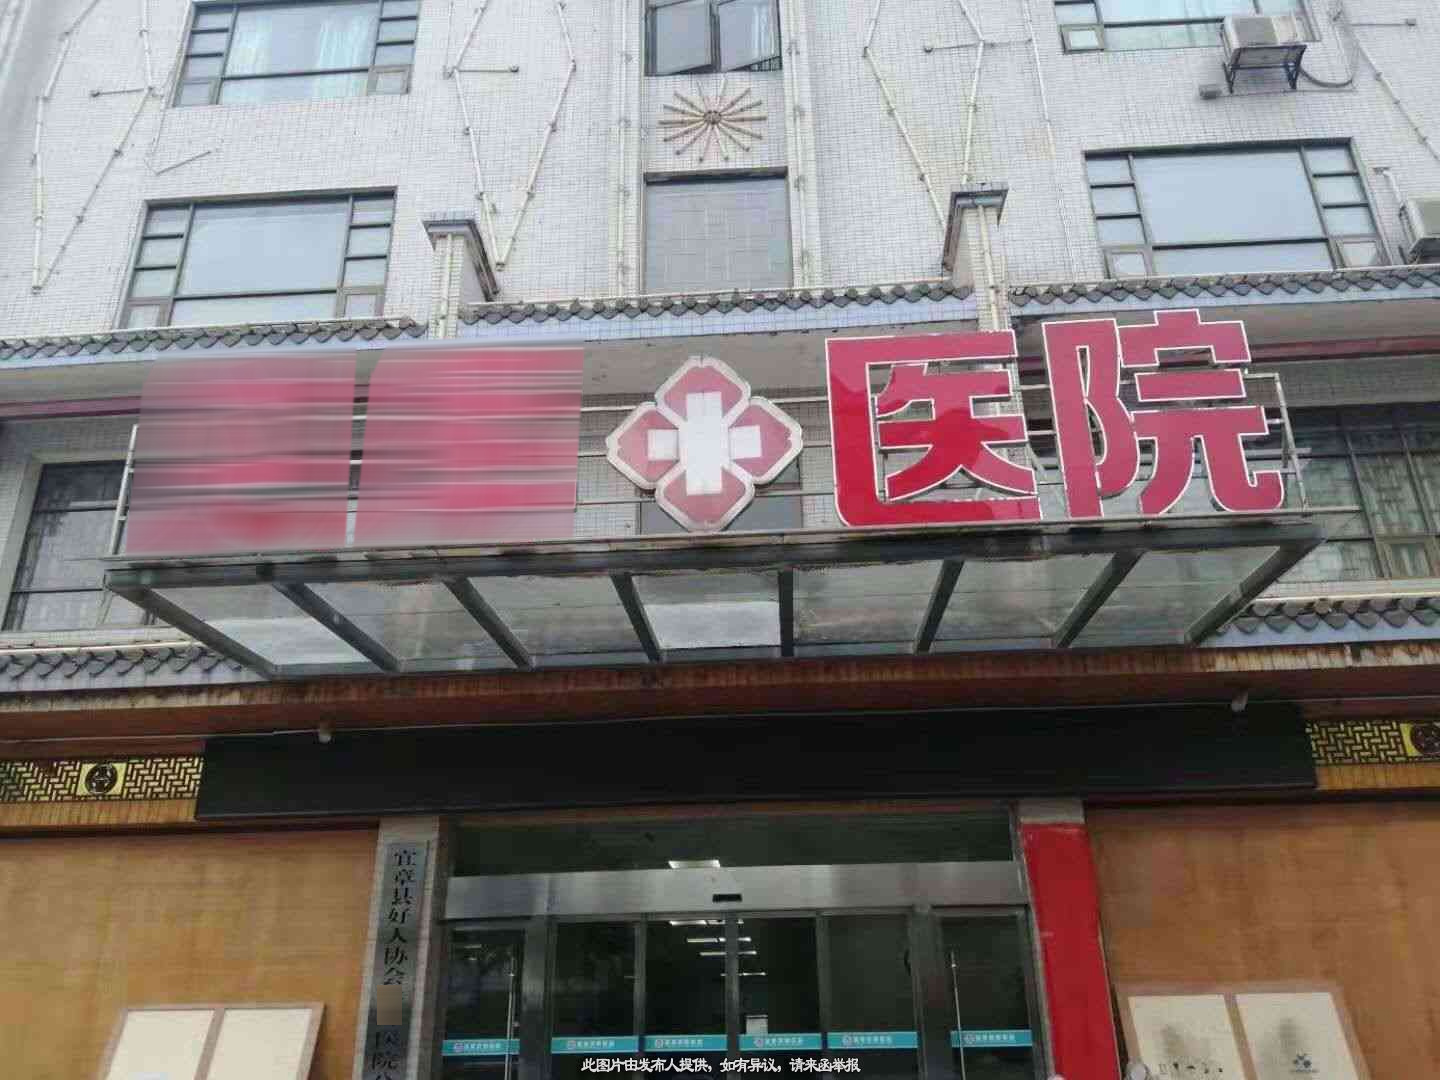 科室共建,郴州县城内医院男妇科、耳鼻喉科对外寻求技术输入